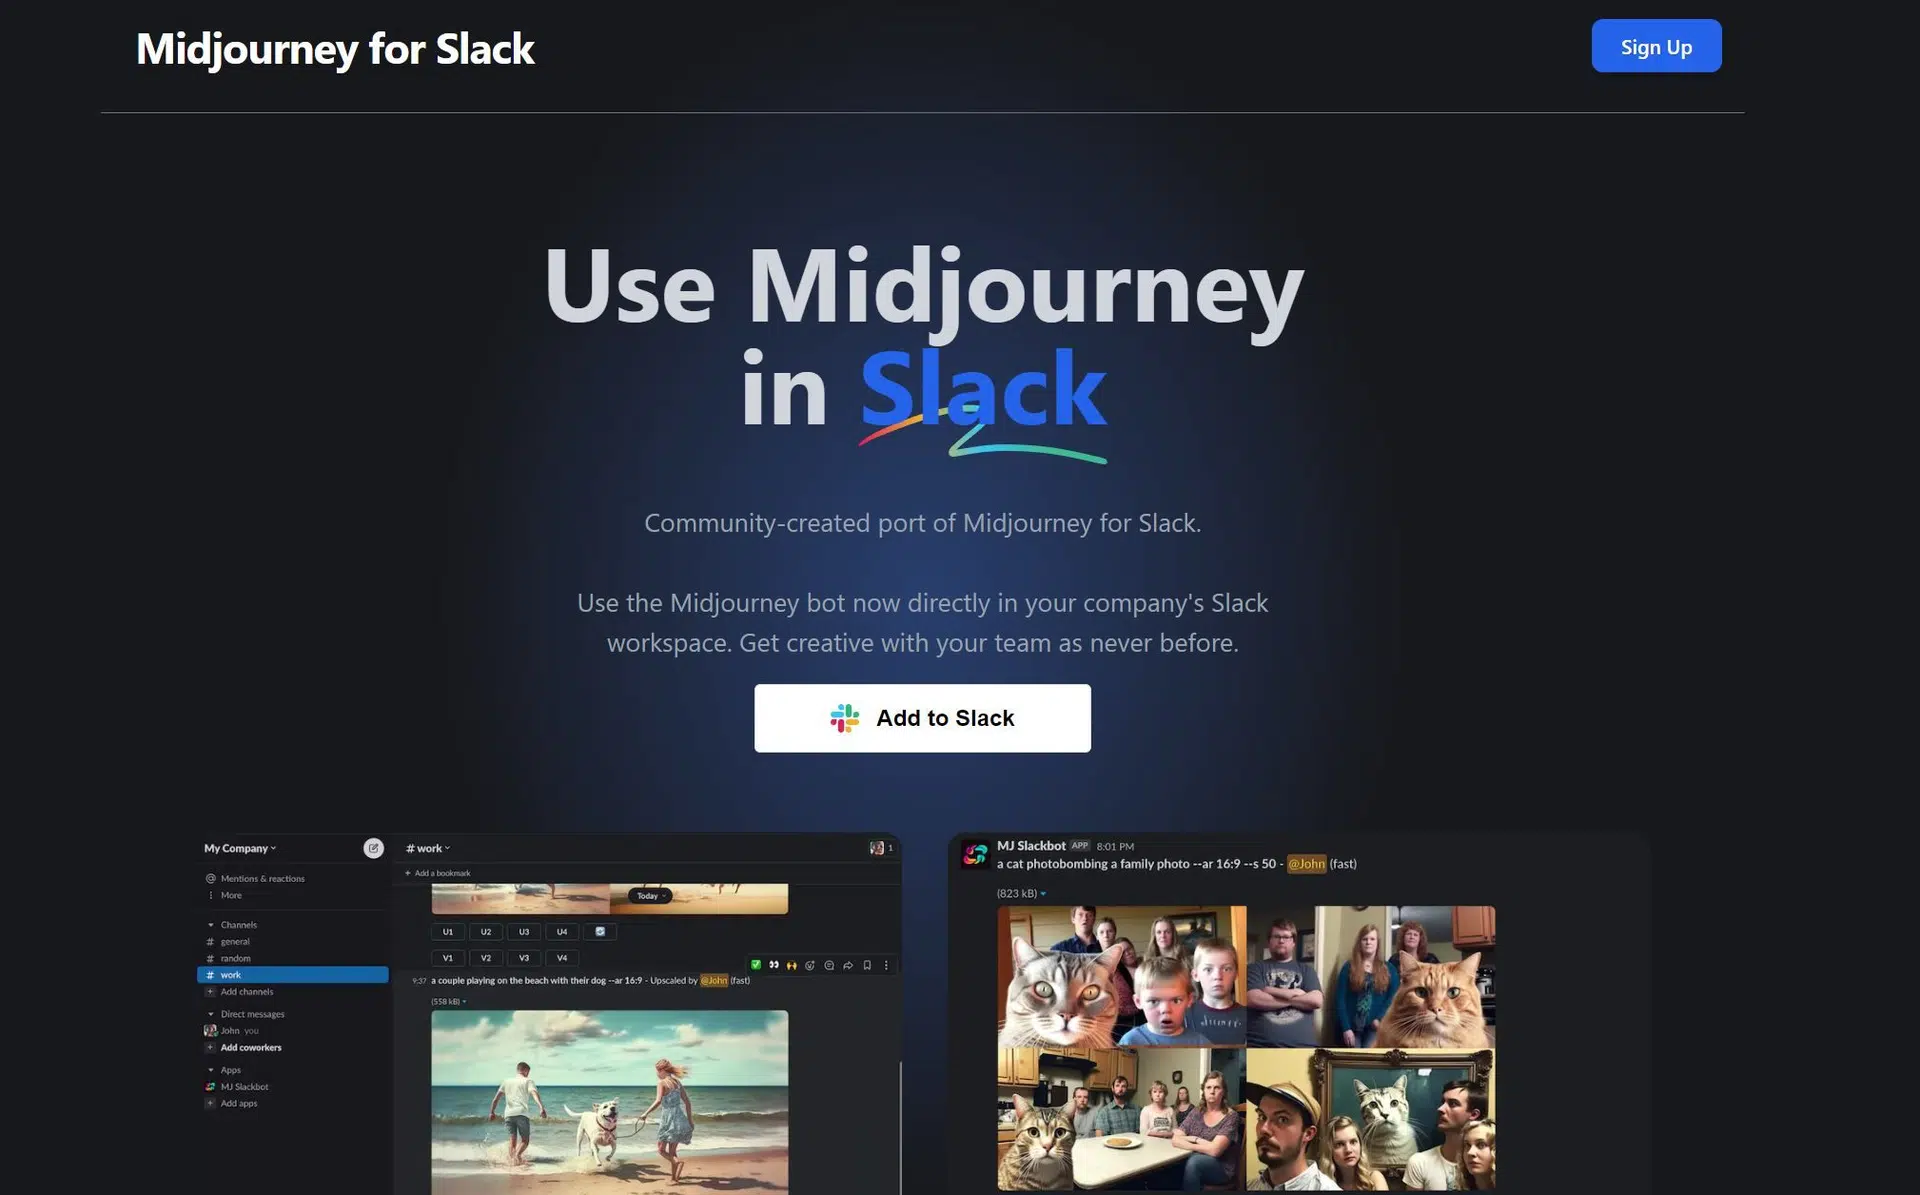 Midjourney for Slackwebsite picture